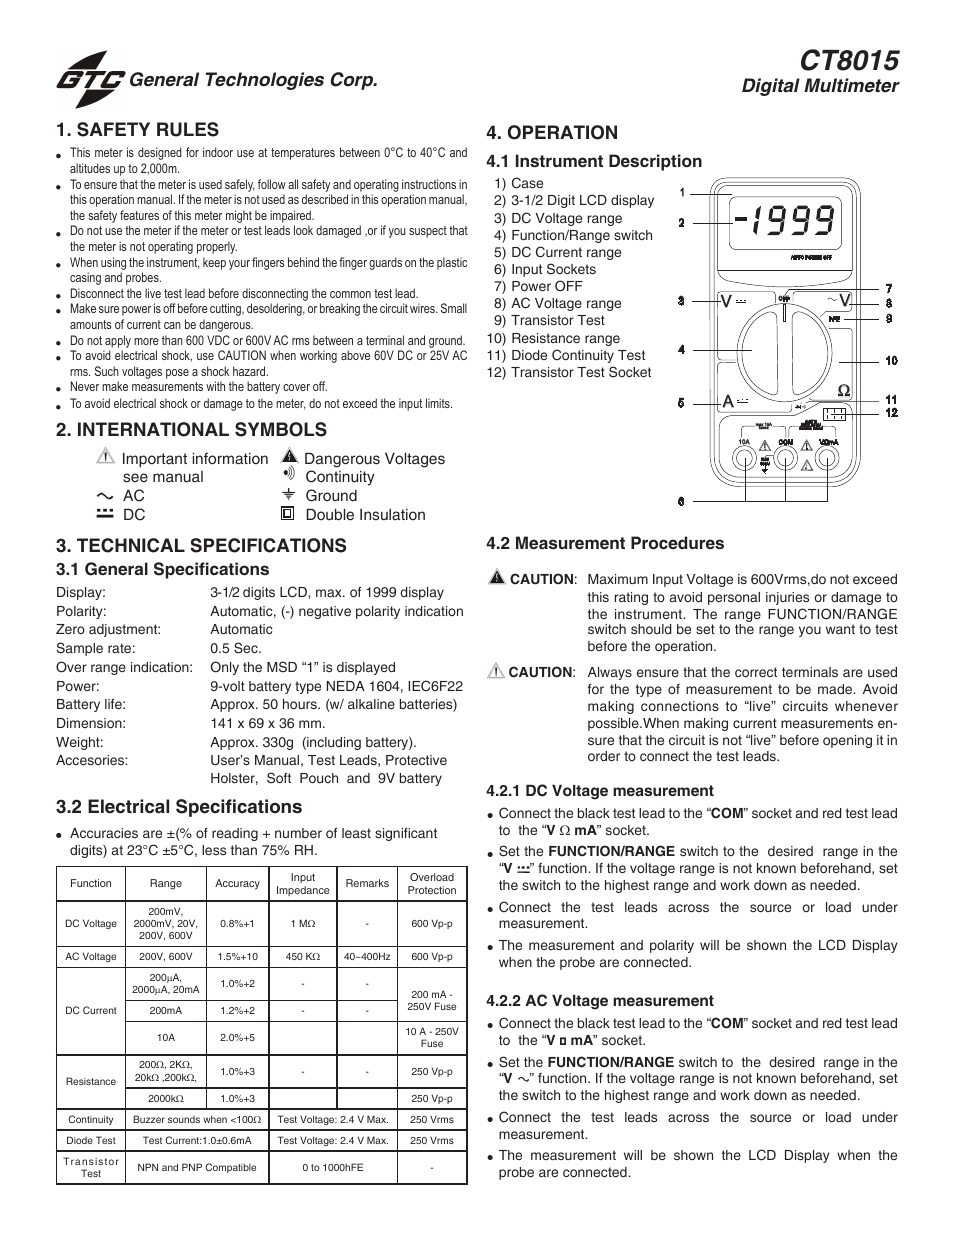 CT8015 	CT8015 Manual Range Digital Multimeter